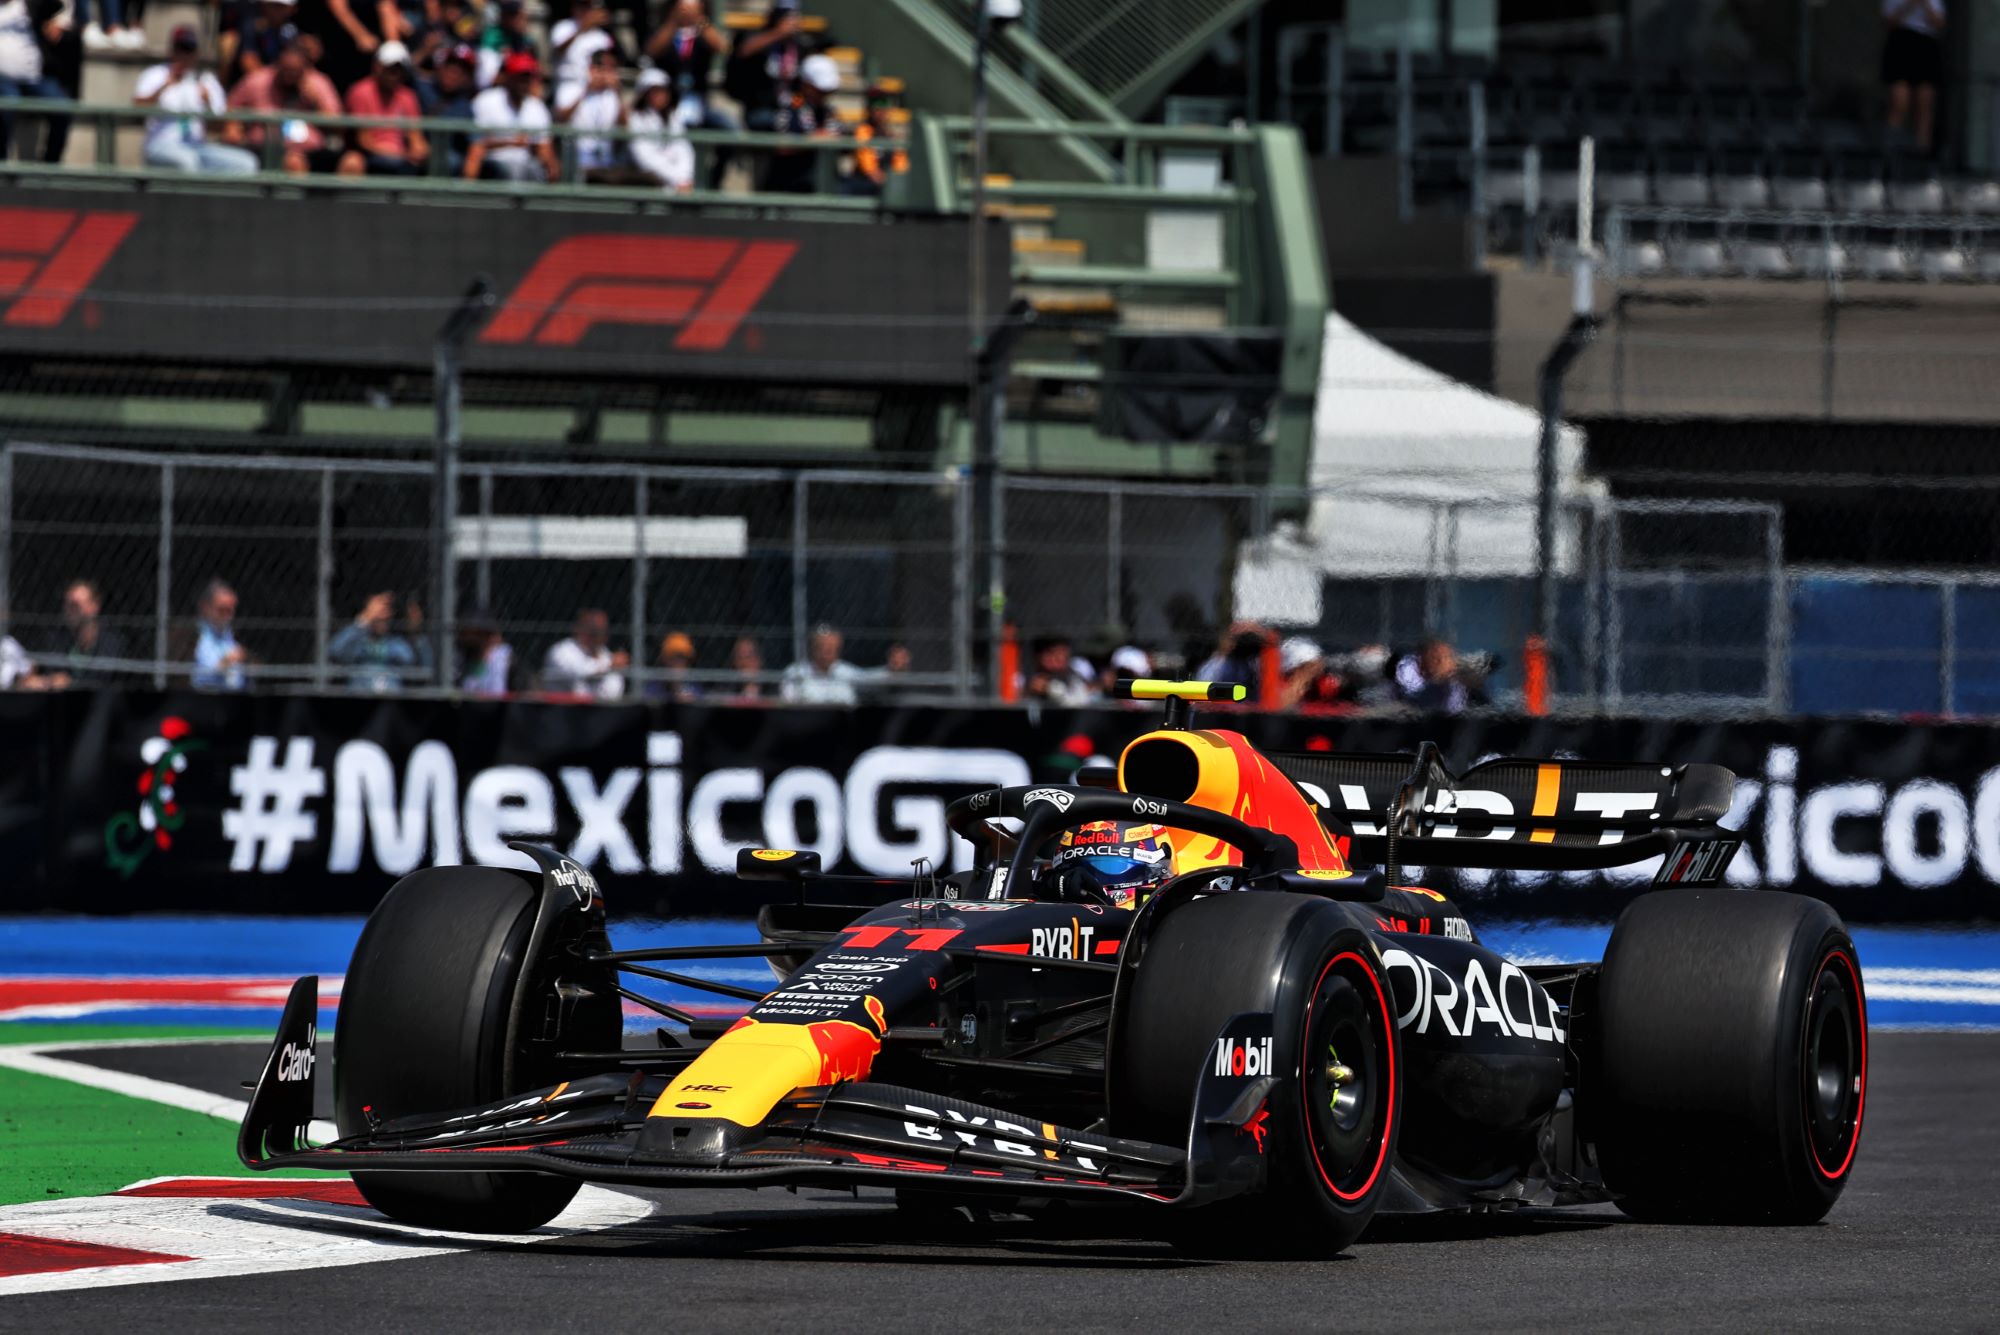 Verstappen garante sua primeira pole position no México após treinos fracos  - 29/10/2022 - UOL Esporte